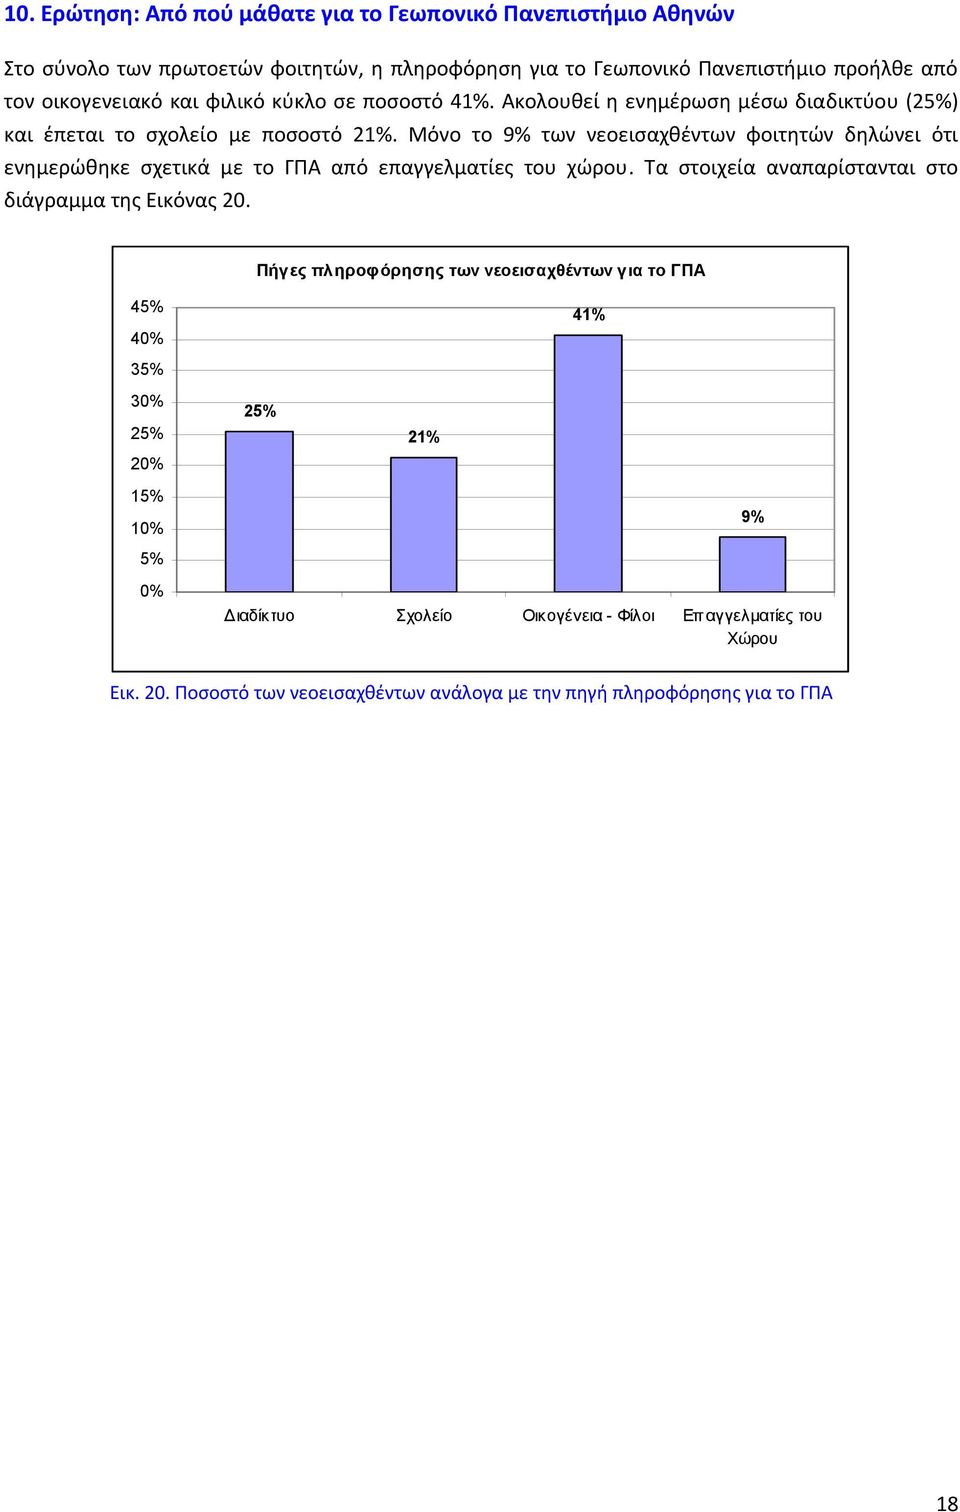 Μόνο το 9% των νεοεισαχθέντων φοιτητών δηλώνει ότι ενημερώθηκε σχετικά με το ΓΠΑ από επαγγελματίες του χώρου. Τα στοιχεία αναπαρίστανται στο διάγραμμα της Εικόνας 20.